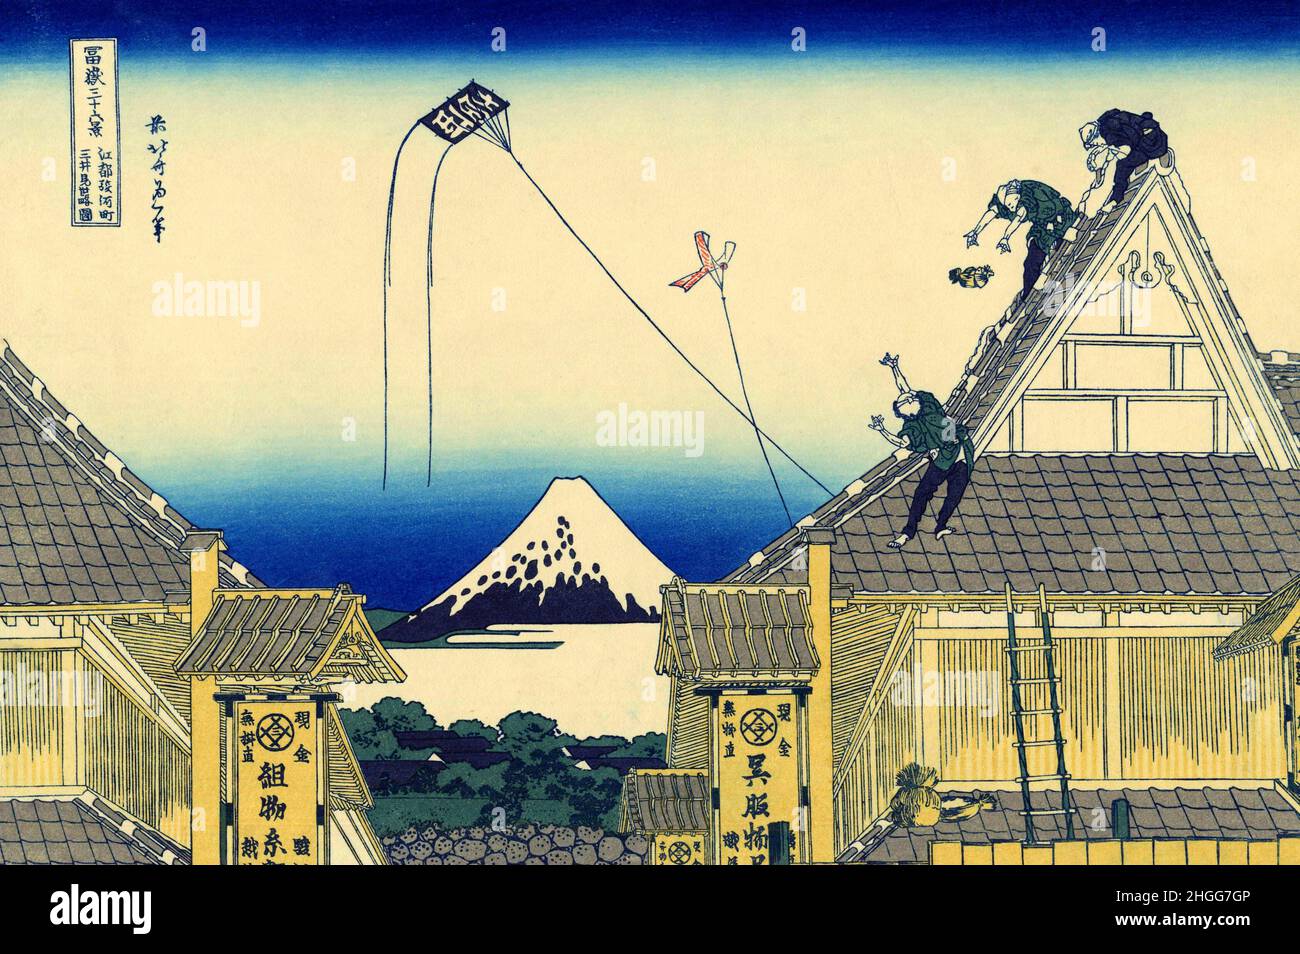 Japan: ‘The Mitsui Shop in Suruga'. Ukiyo-e Holzschnitt aus der Serie ‘Thirty-Six views of Mount Fuji’ von Katsushika Hokusai (31. Oktober 1760 - 10. Mai 1849), 1830. ‘Thirty-Six Views of Mount Fuji’ ist eine Serie von Holzschnitten der japanischen Künstlerin Katsushika Hokusai, die „Sukiyo-e“ ‘. Die Serie zeigt den Fuji in unterschiedlichen Jahreszeiten und Wetterbedingungen an verschiedenen Orten und Entfernungen. Es besteht tatsächlich aus 46 Drucken, die zwischen 1826 und 1833 entstanden sind. Die ersten 36 wurden in die Originalpublikation aufgenommen, und aufgrund ihrer Popularität wurden nach der Originalpublikation 10 weitere hinzugefügt. Stockfoto